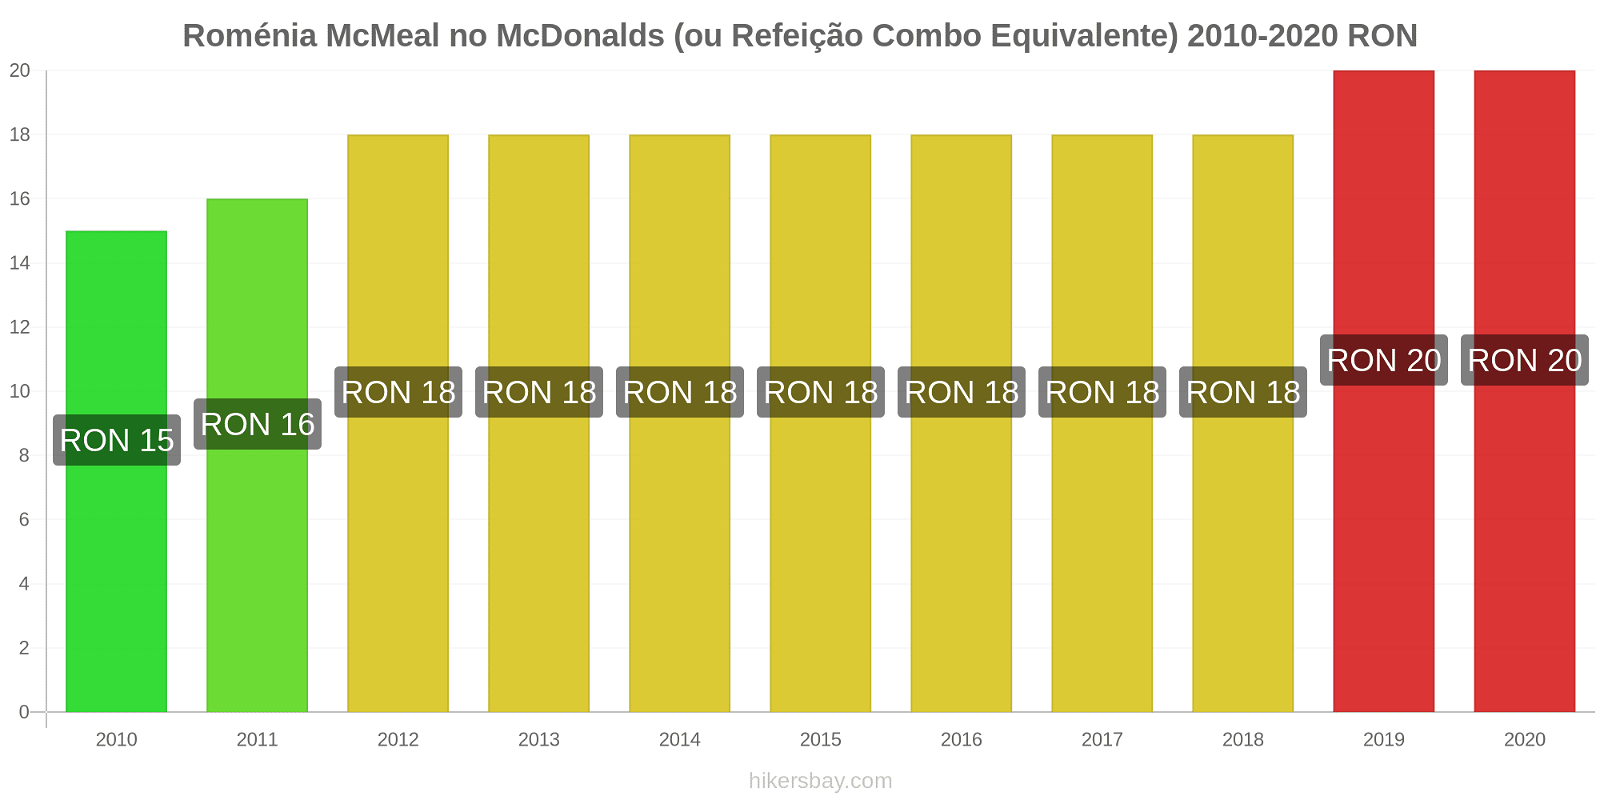 Roménia variação de preço McMeal no McDonald ' s (ou refeição Combo equivalente) hikersbay.com